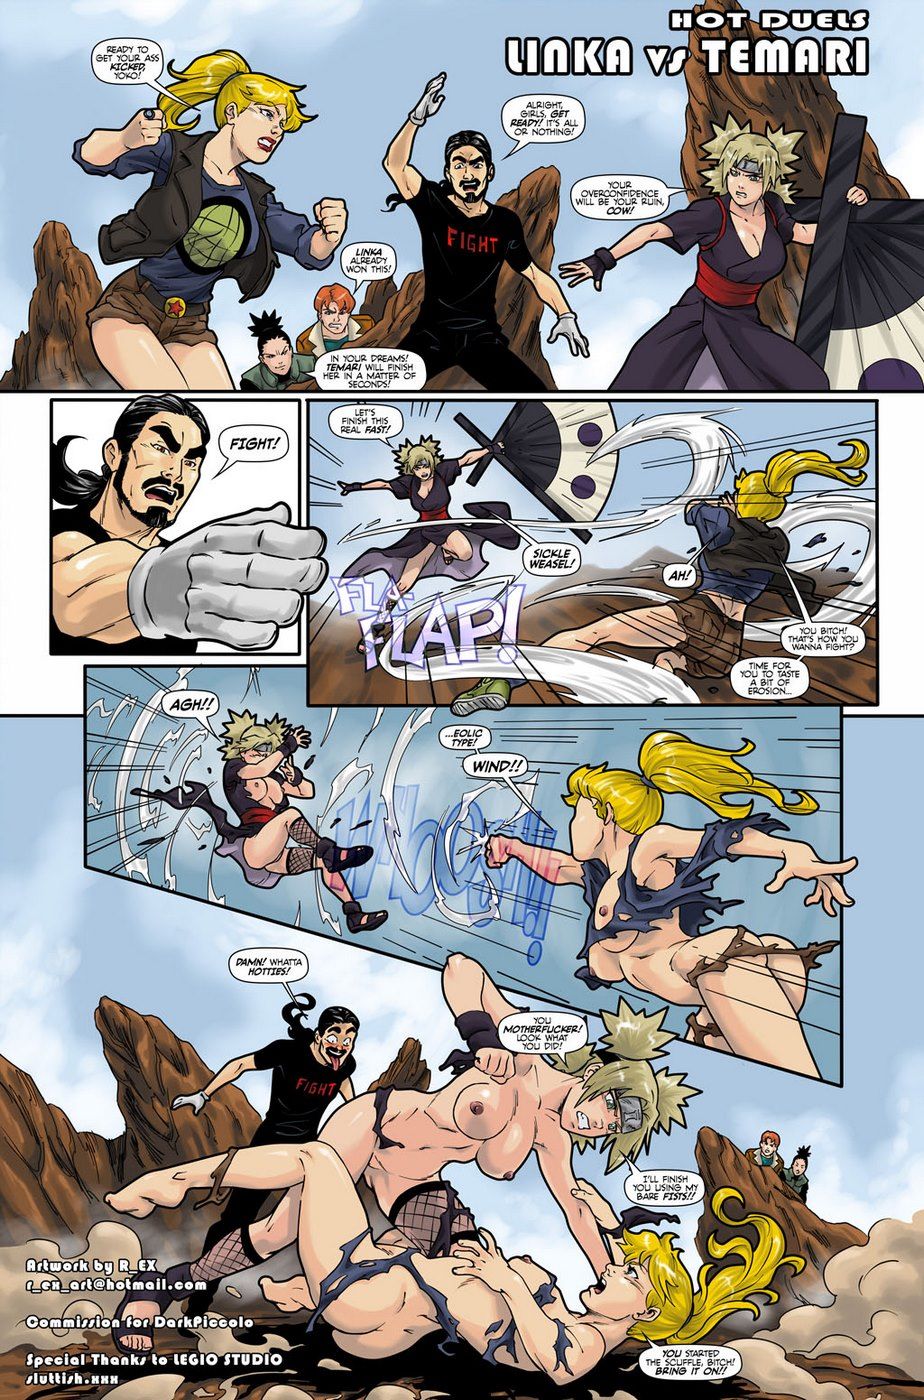 Hot Duels 1 - Temari vs Linka (Naruto) page 2